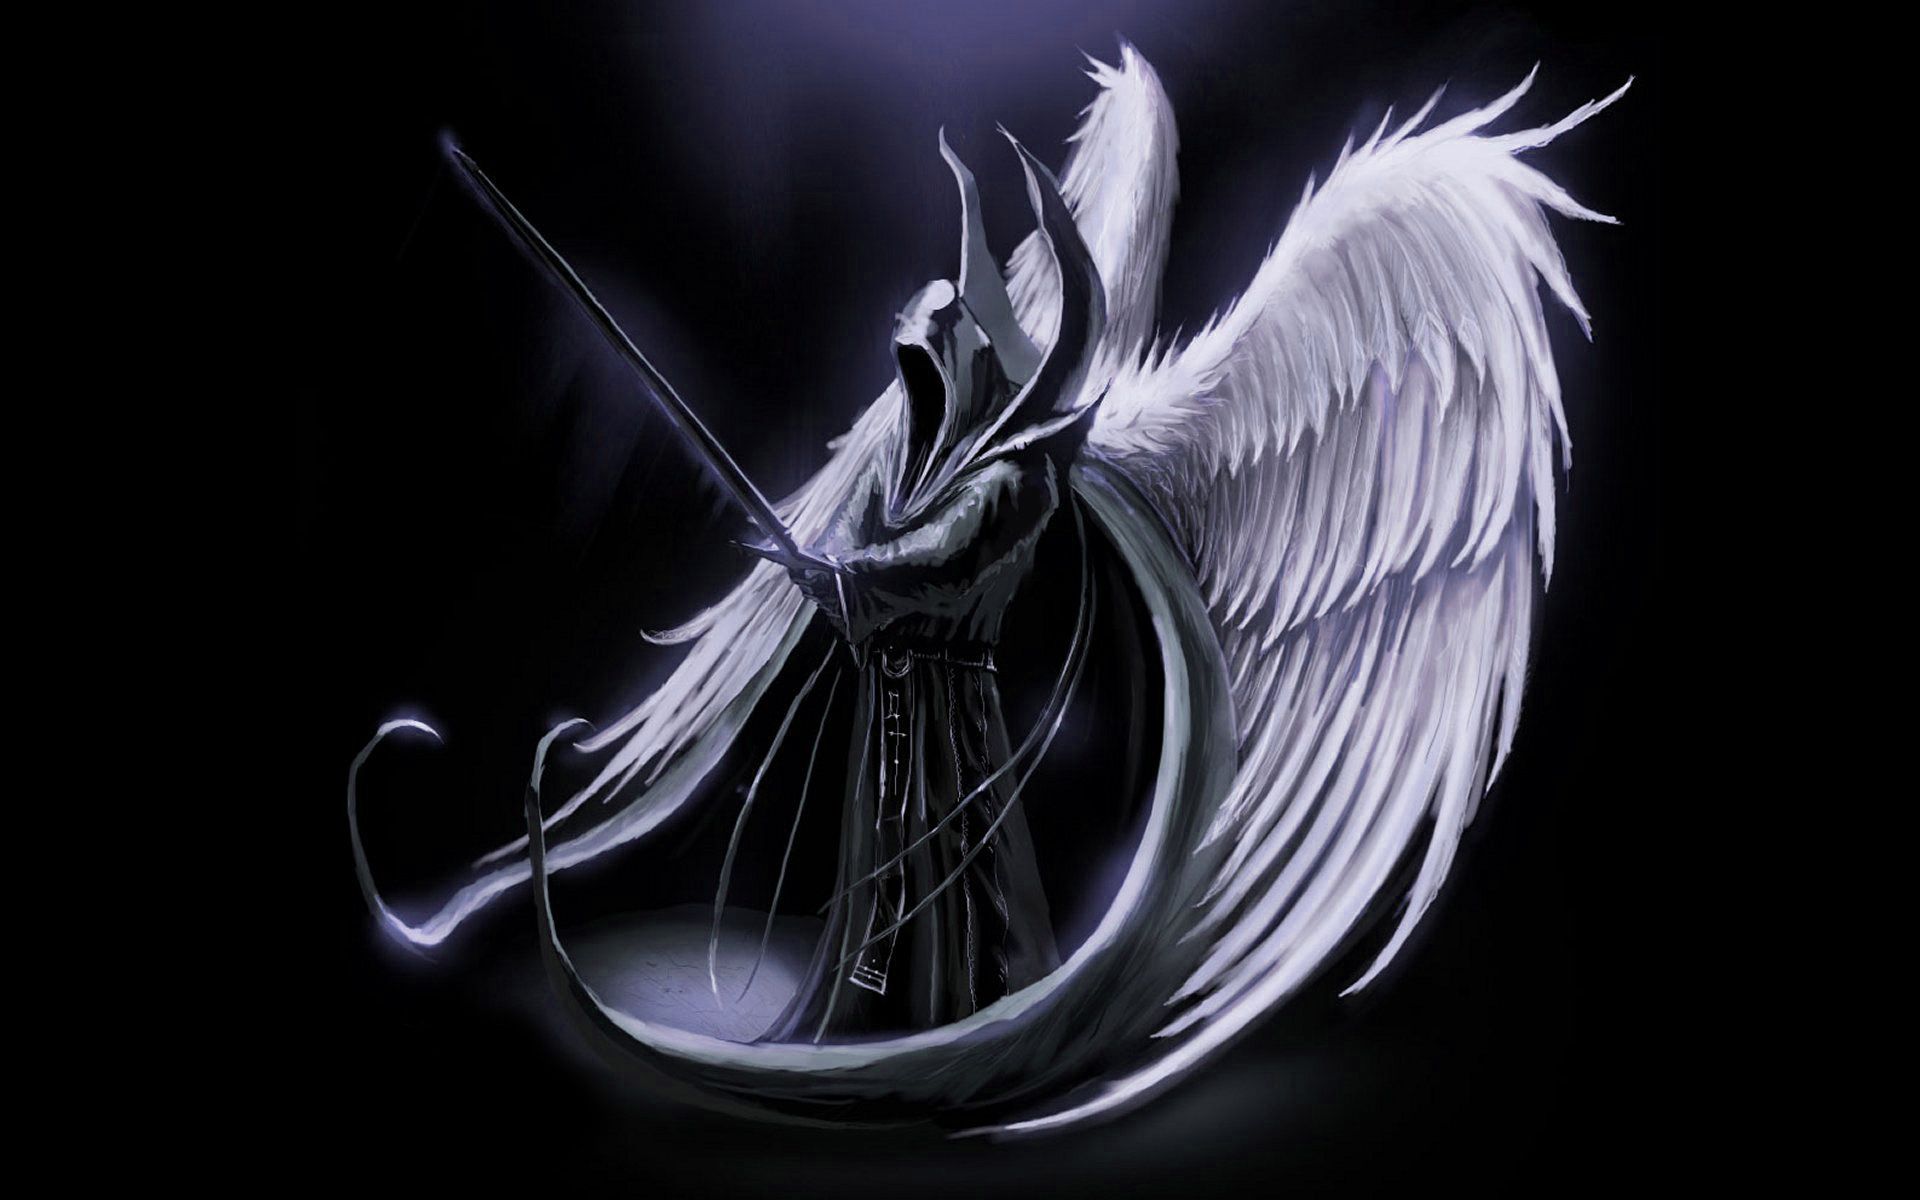 Dark Angel With Sword - 1920x1200 Wallpaper 